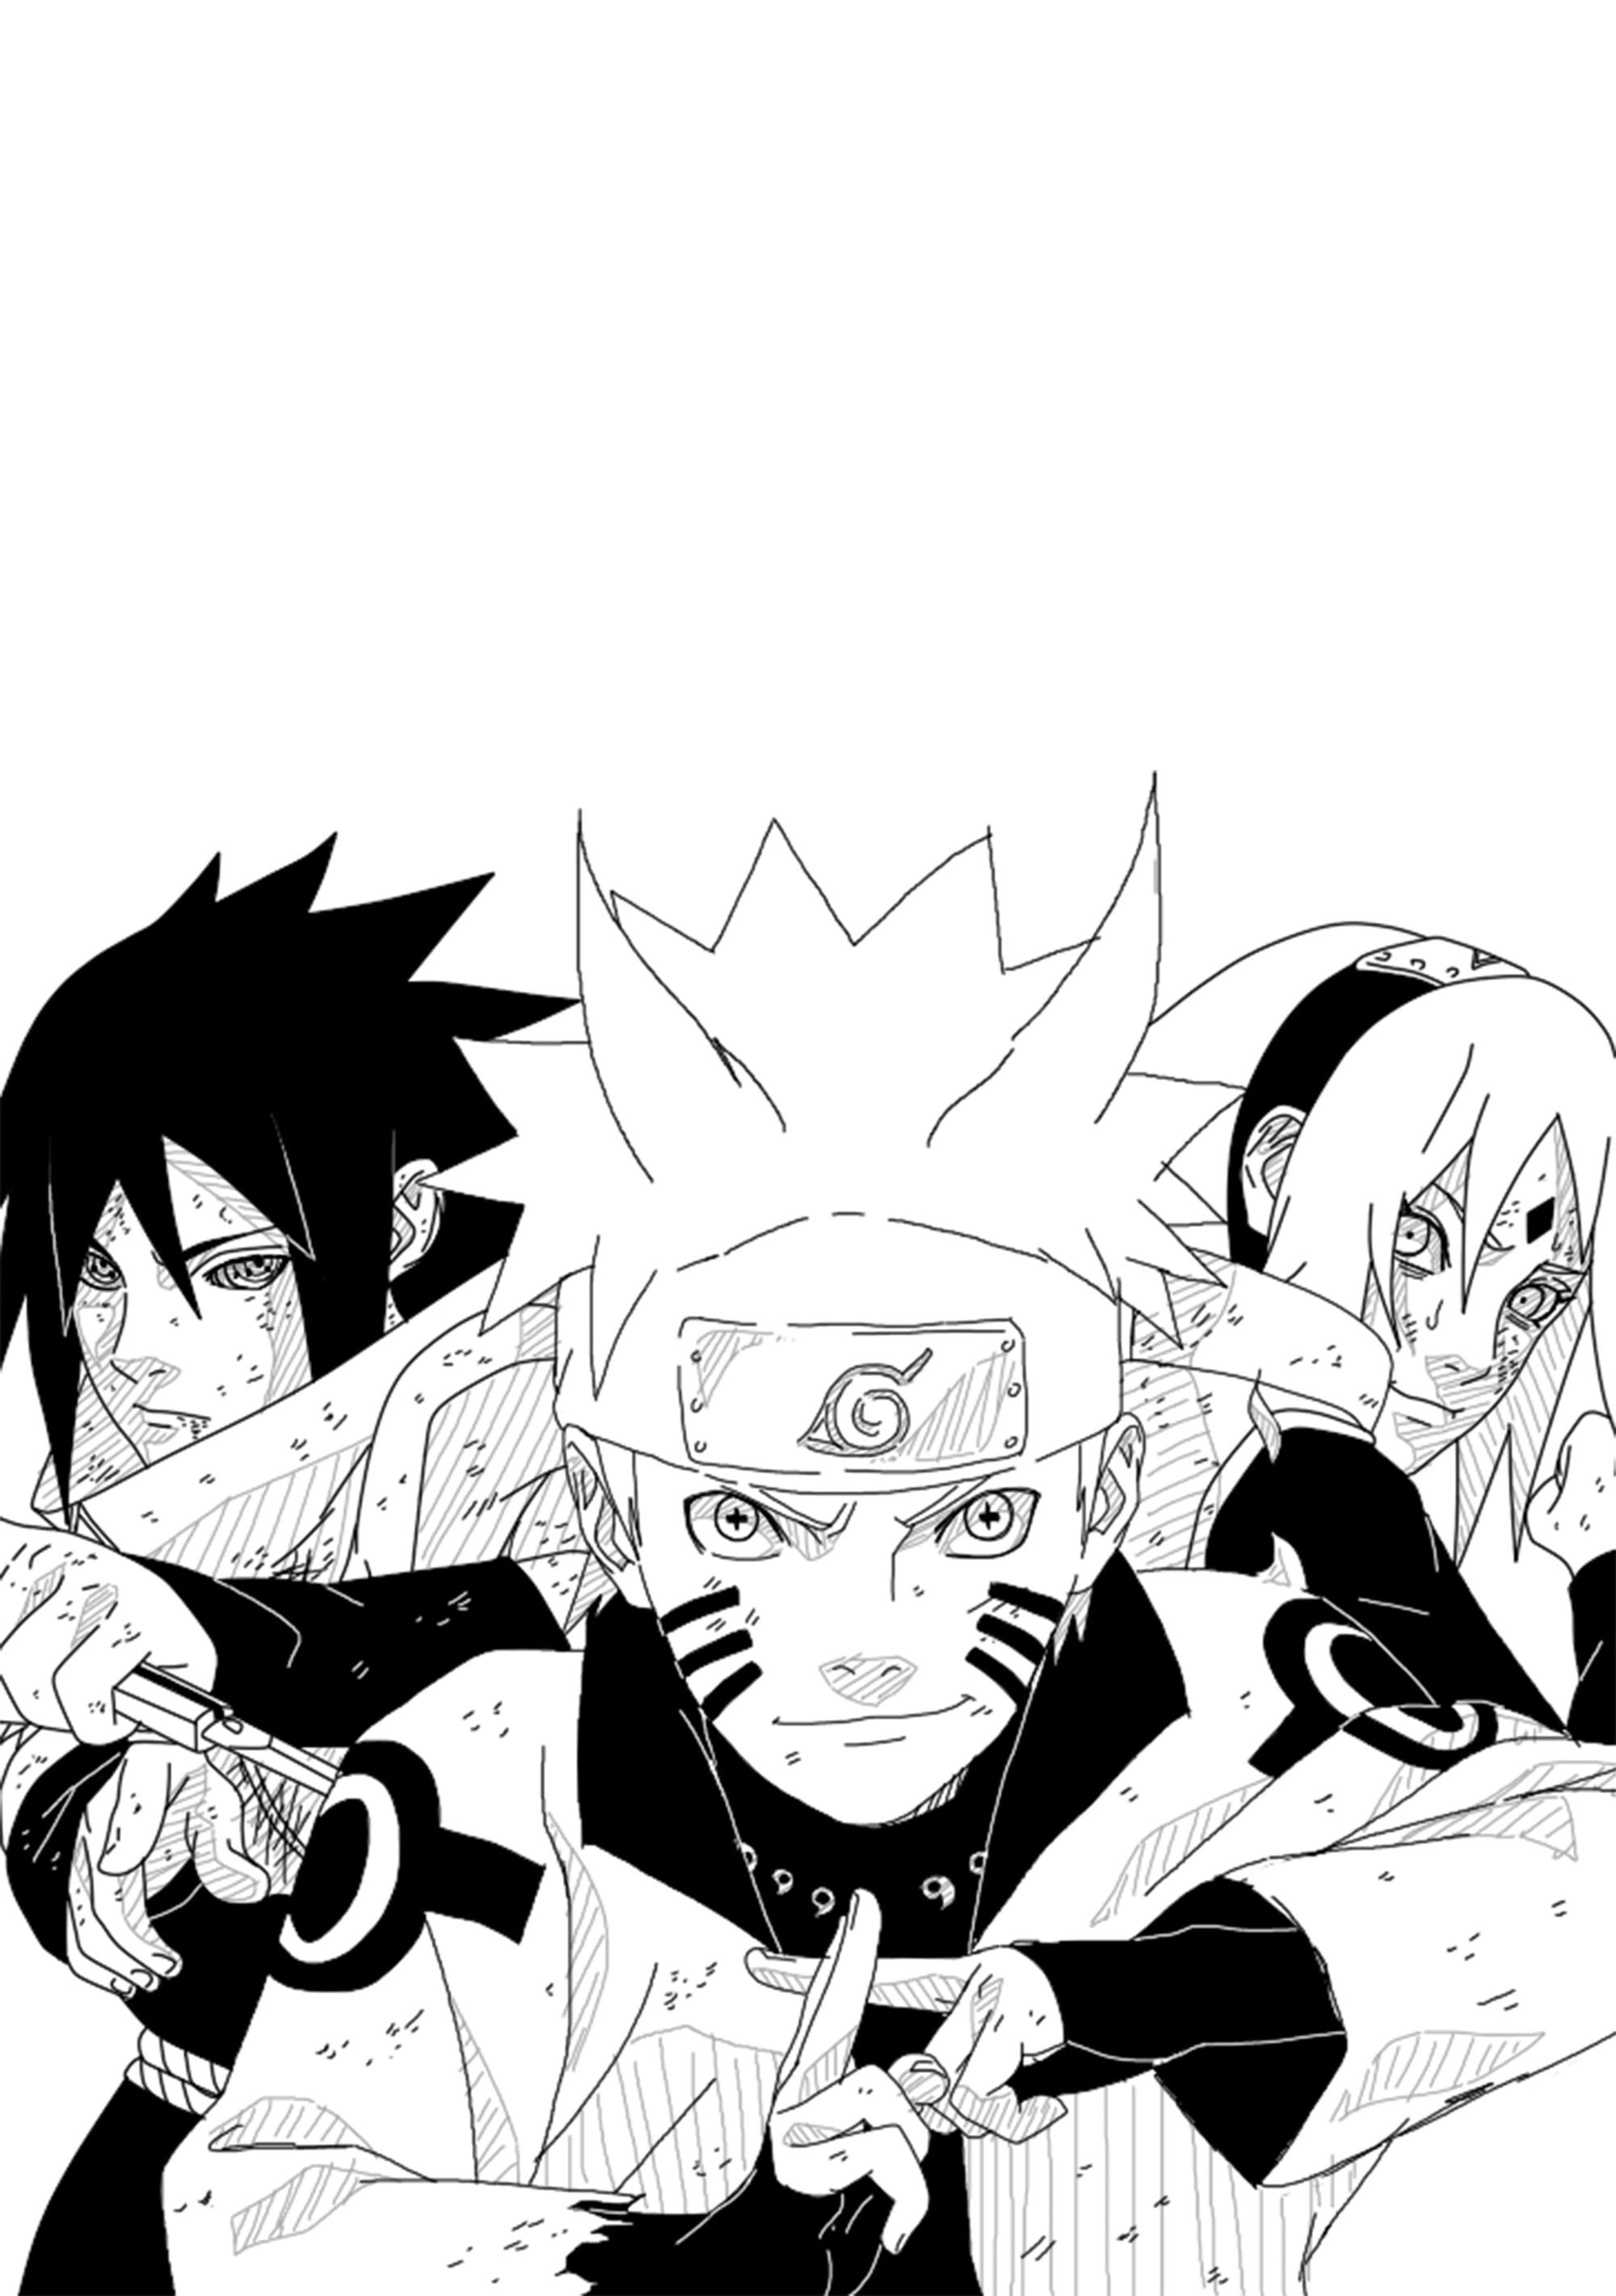 Naruto, Sasuke, and Sakura illustration Naruto Shippuuden #manga Uchiha Sasuke Haruno Sakura Uzumaki Naruto K #wallpaper. Anime naruto, Naruto art, Anime canvas